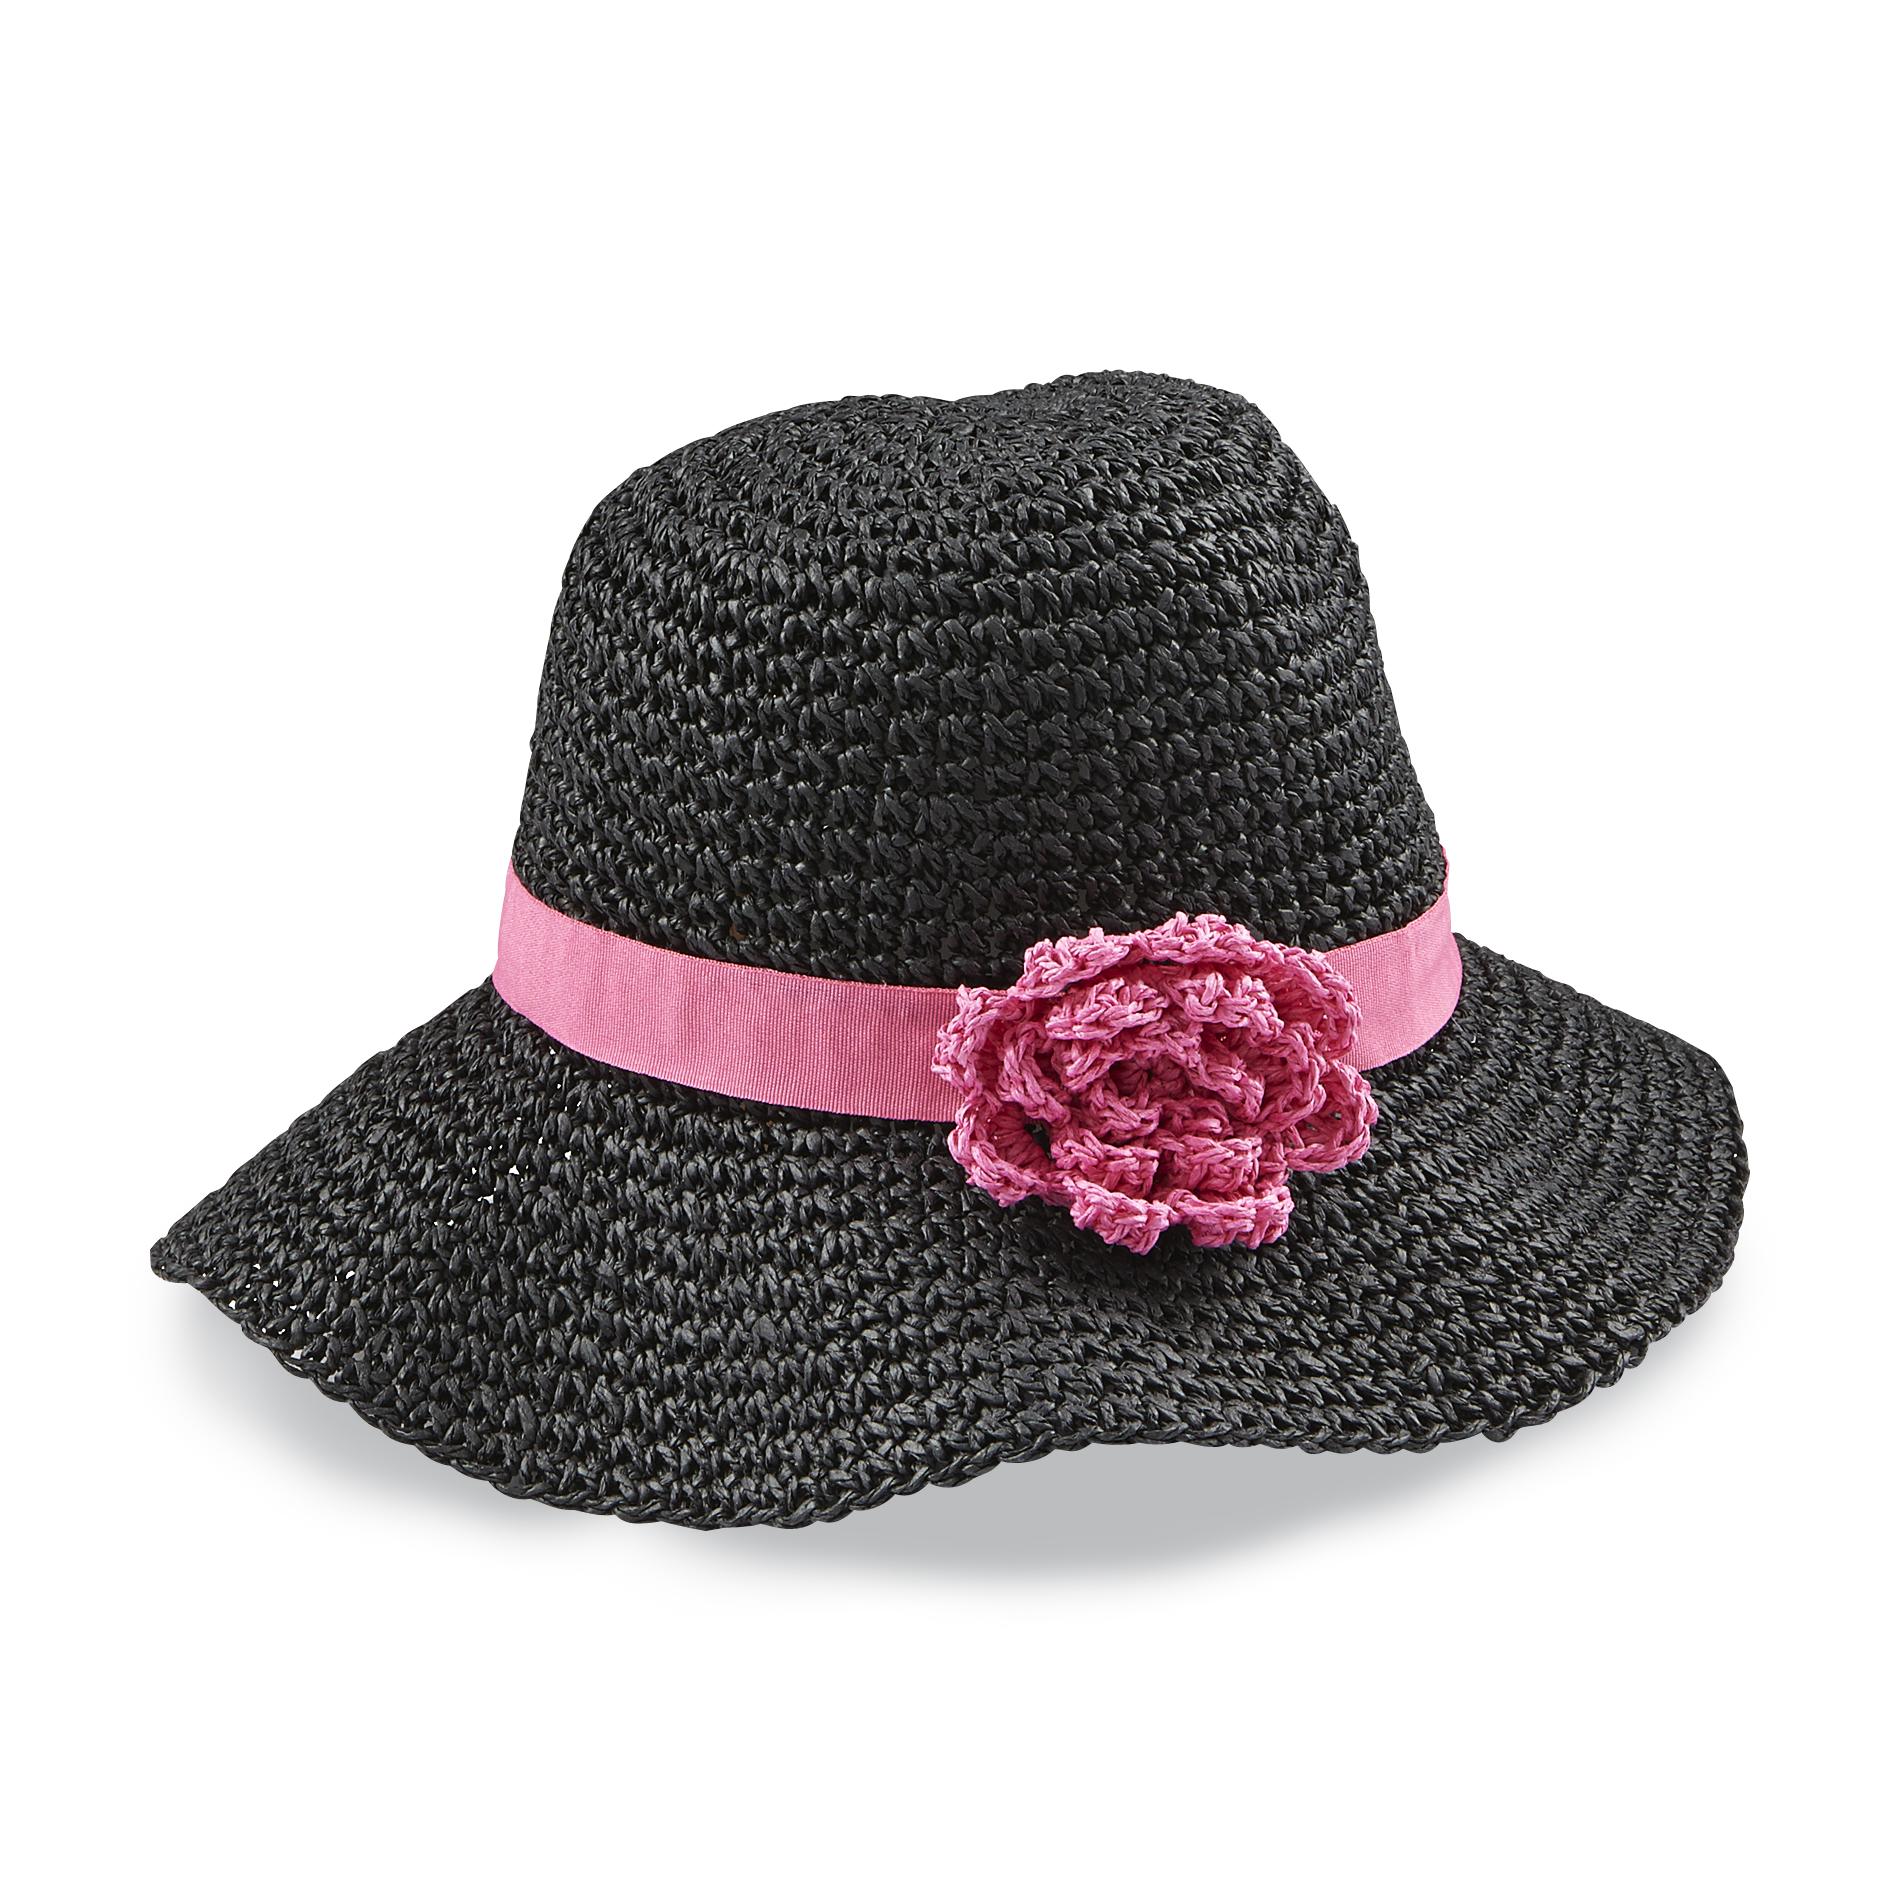 Jaclyn Smith Women's Straw Cloche Hat - Flower Pin